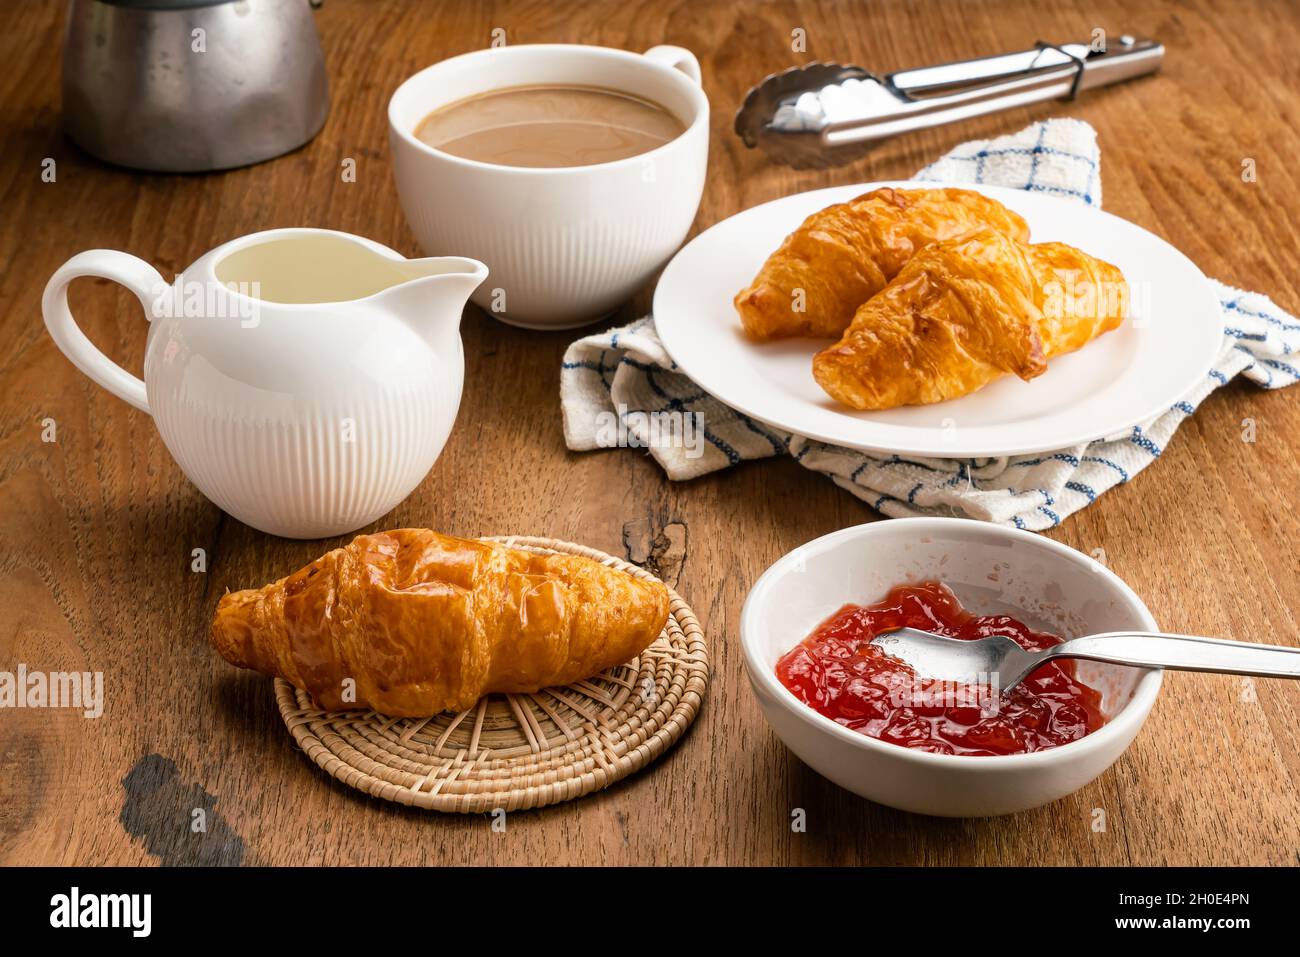 Frühstück mit leckeren hausgemachten Croissants, Erdbeermarmelade und heißem Milchkaffee. Frisch gebackene Croissants in weißer Keramikschale mit Erdbeermarmelade Stockfoto